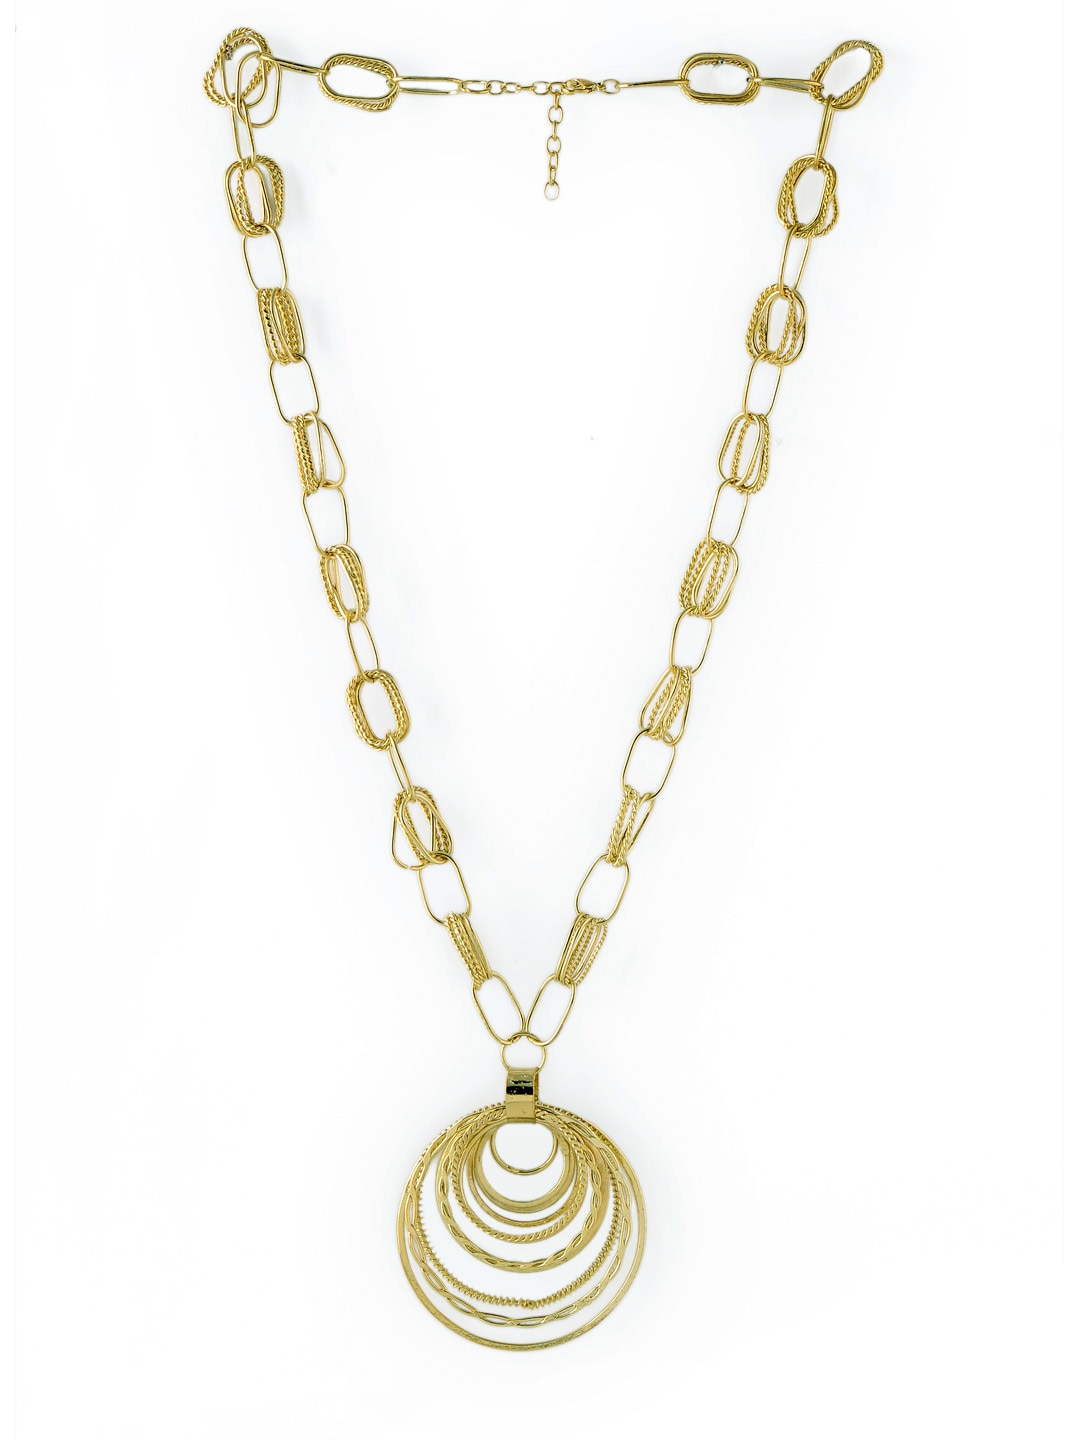 Pitaraa Golden Necklace